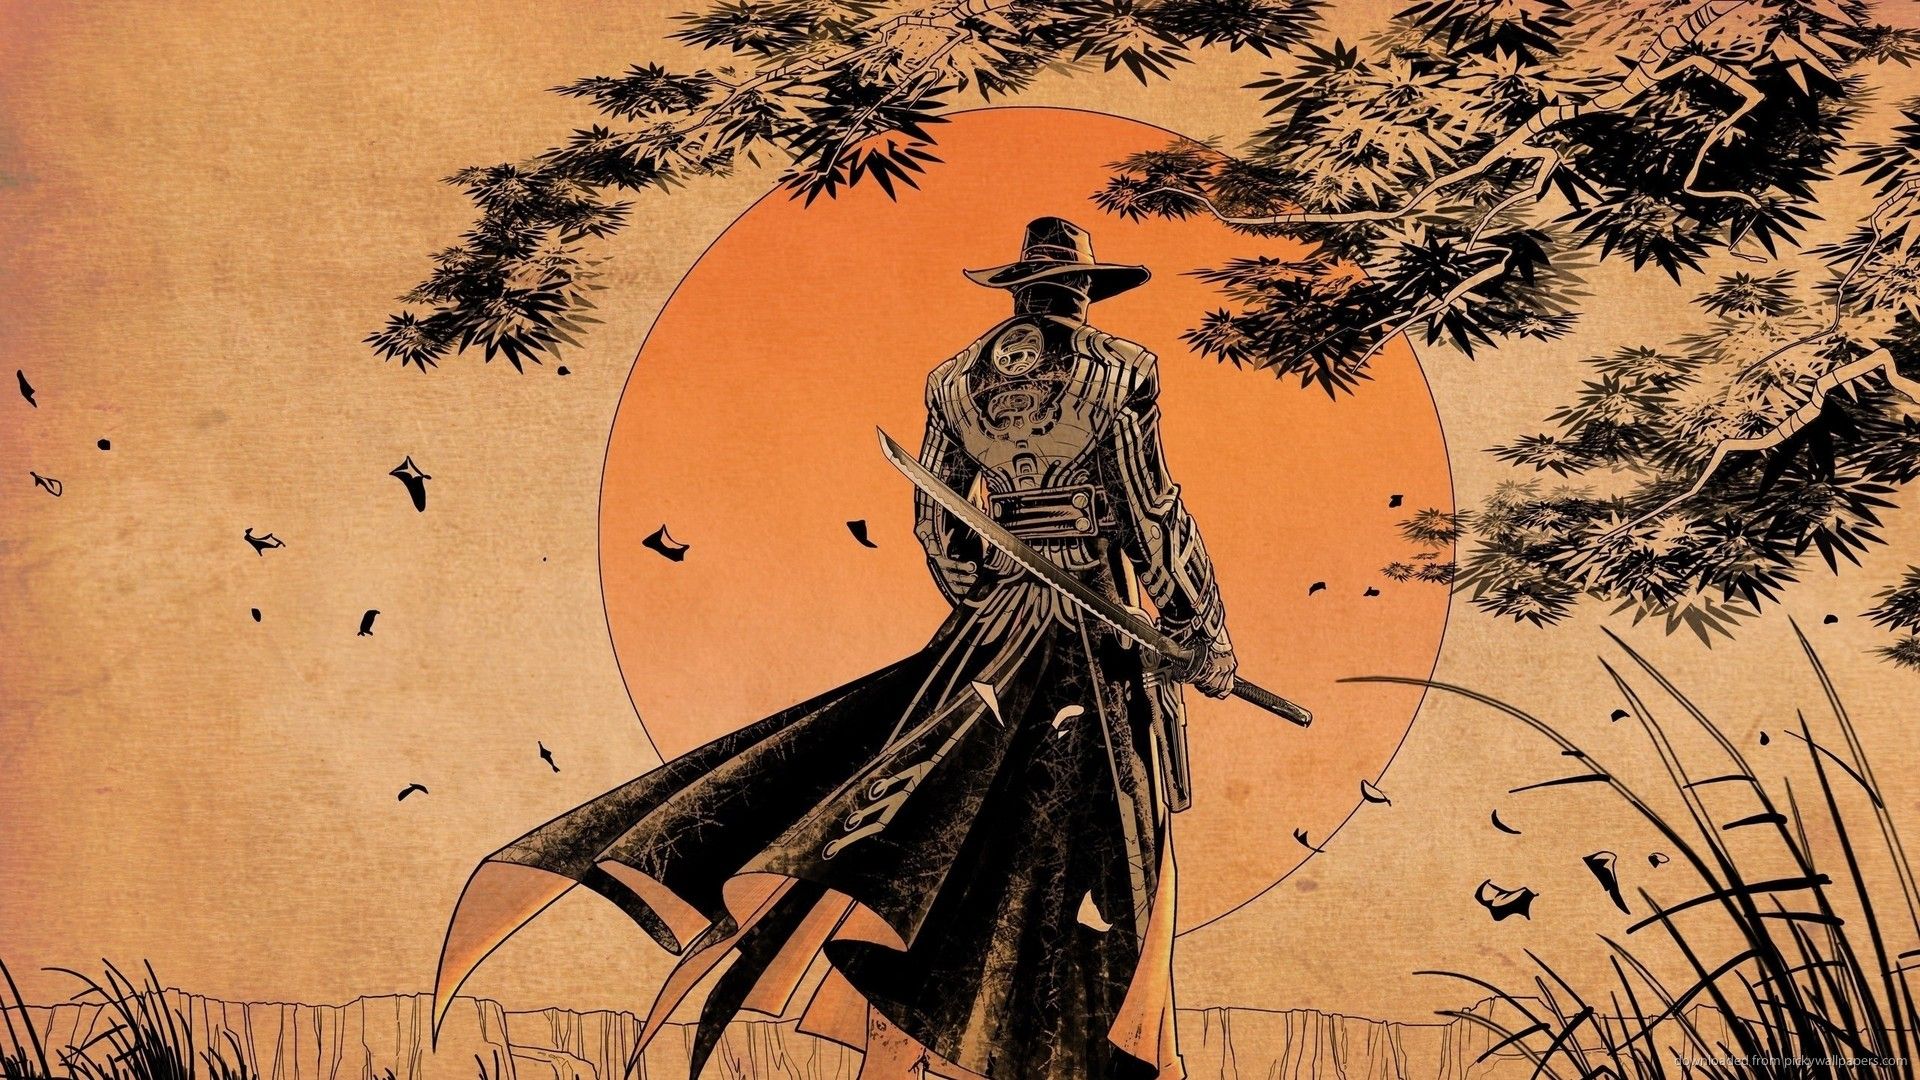 Download 1920x1080 Samurai Sunset Art Wallpaper